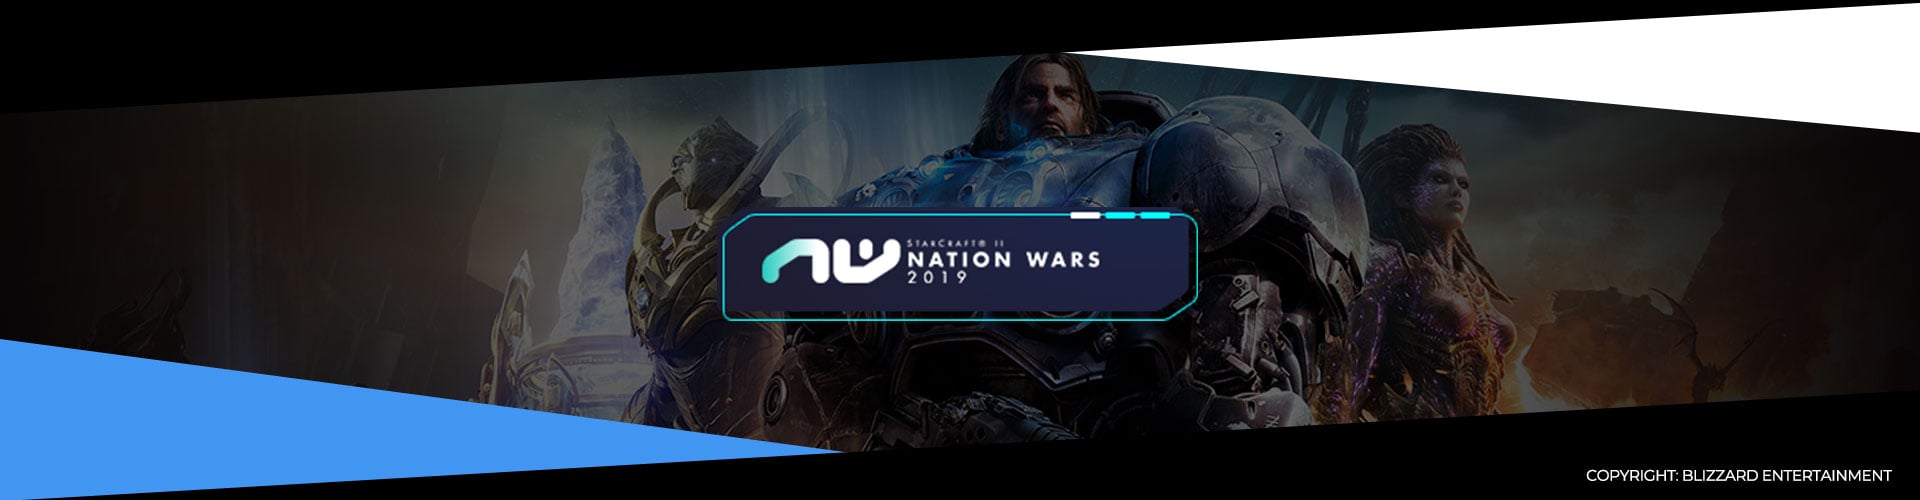 Nation Wars 2019 Finals Recap Article